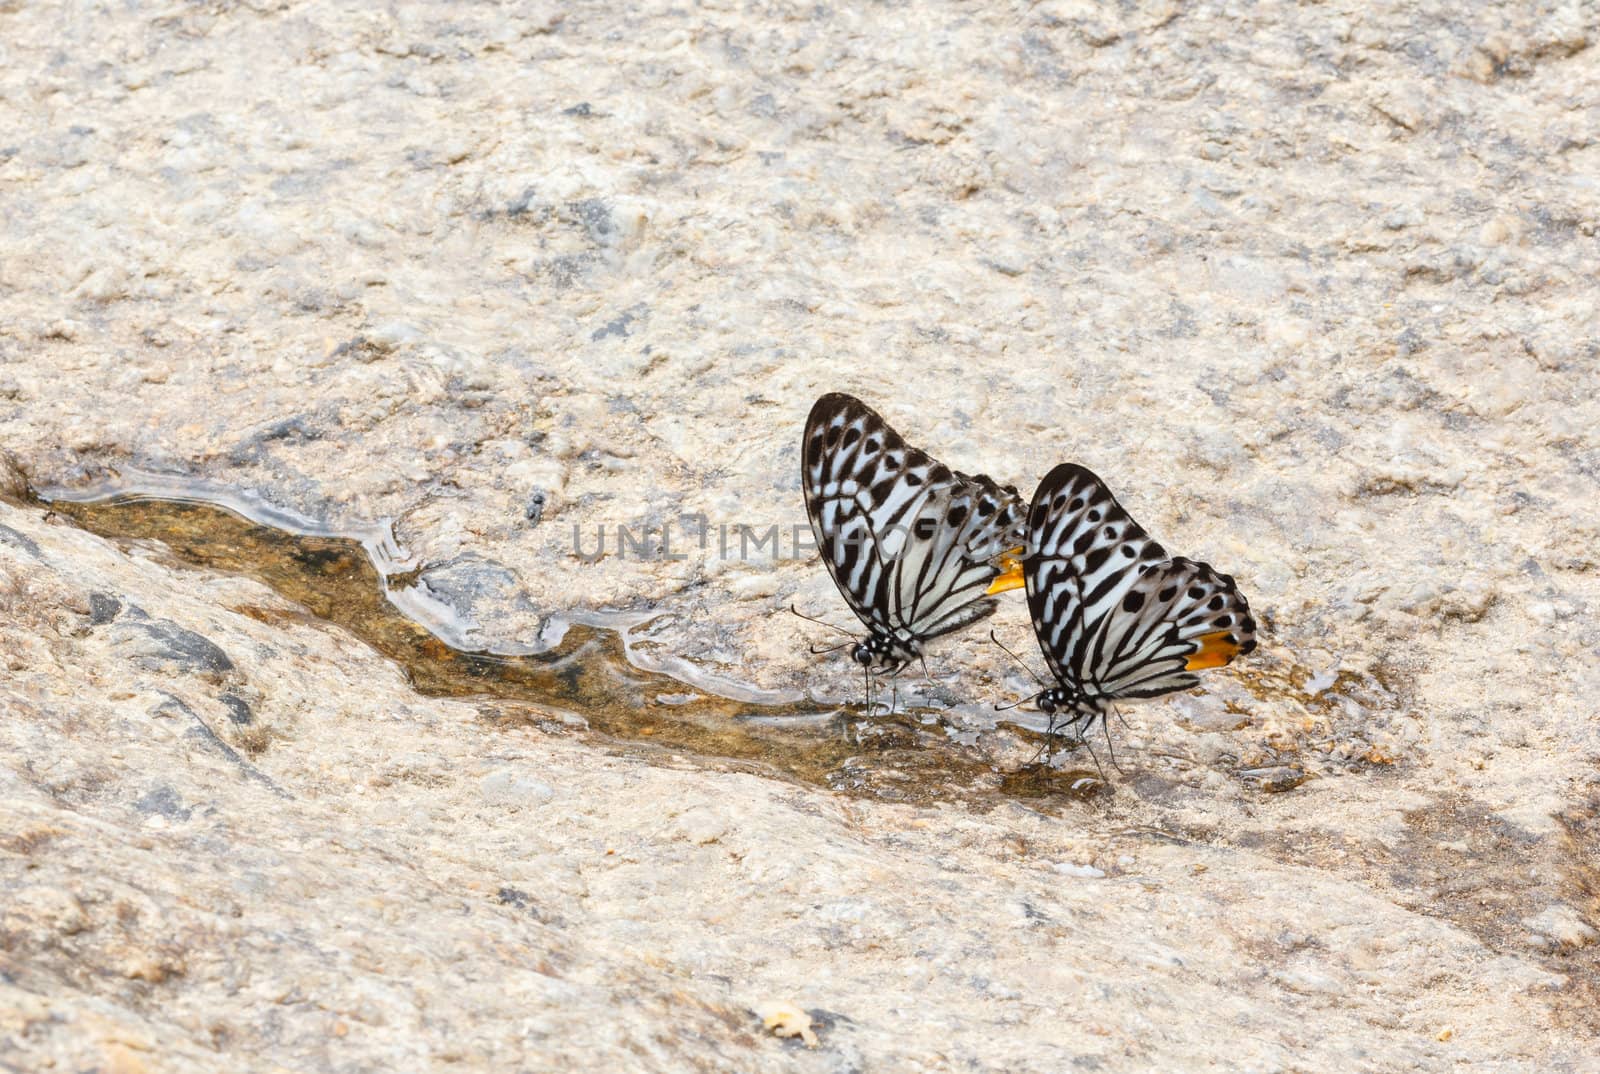 Two Butterflies feed water near waterfall.